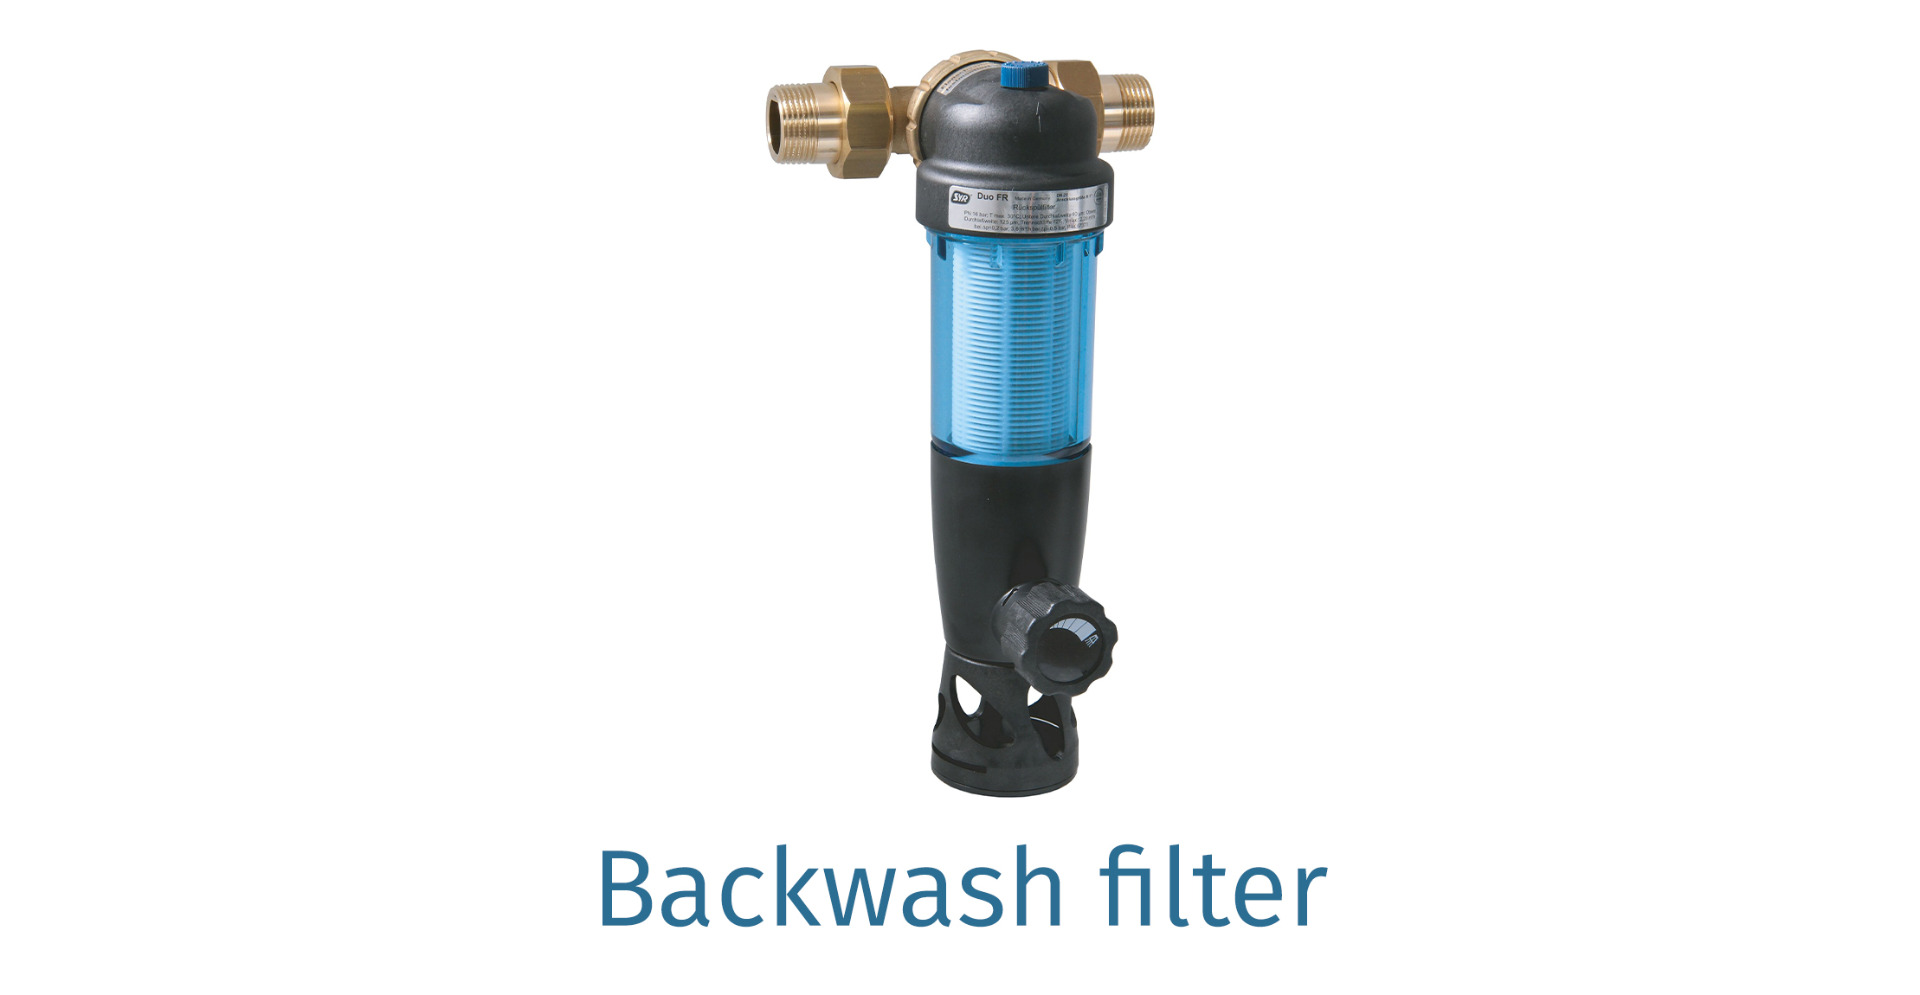 Backwash filters